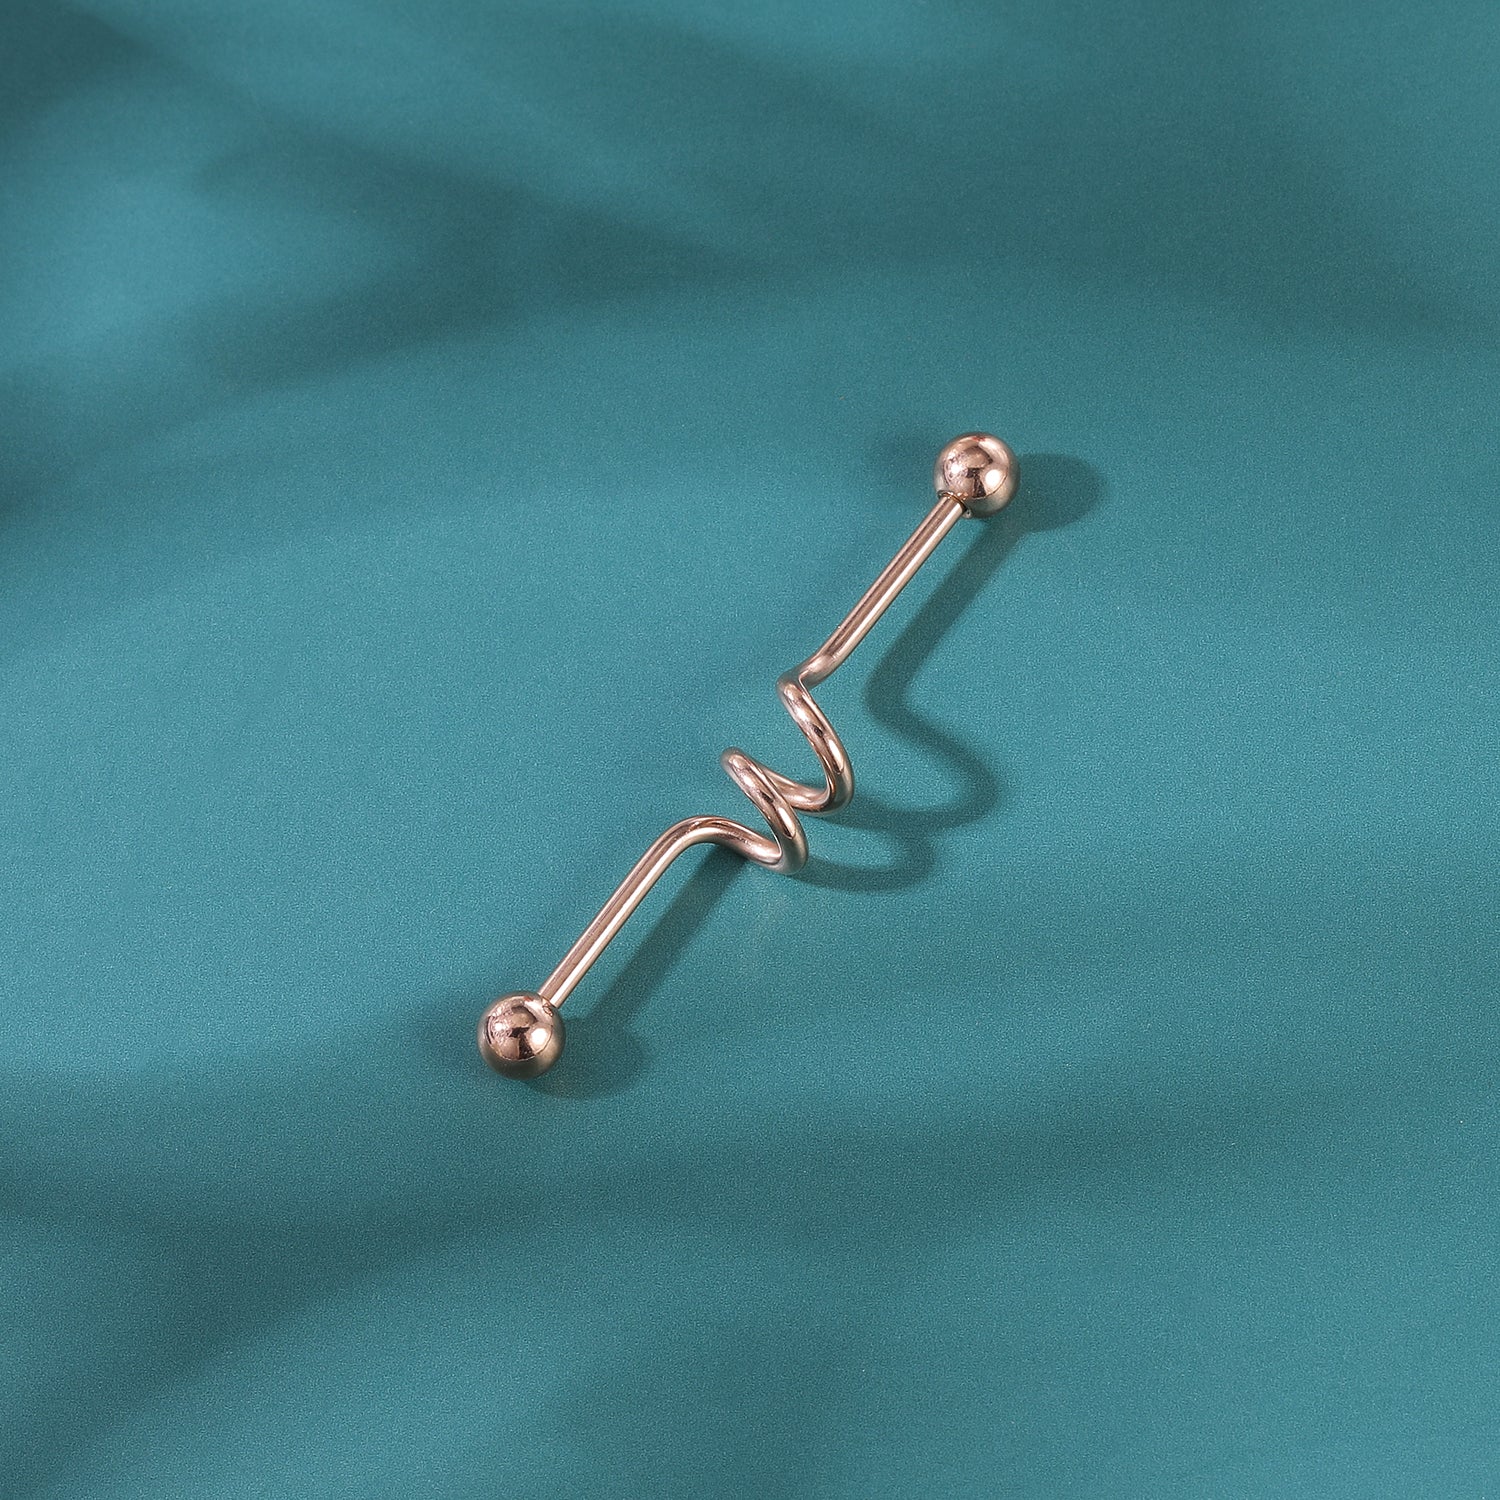 14g-ball-industrial-barbell-earring-bridge-ear-helix-piercing